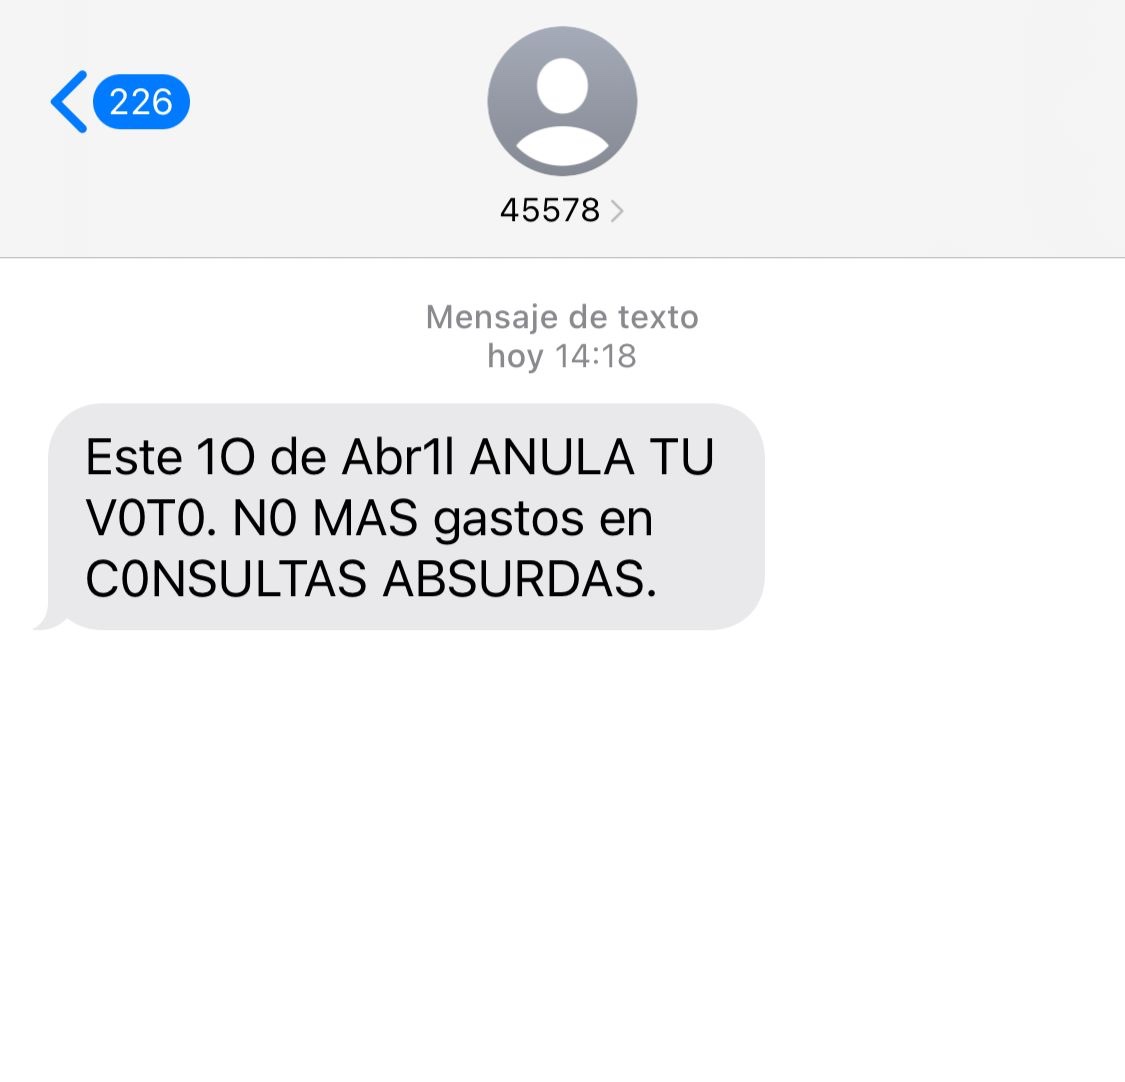 Denuncian mensajes y llamadas telefónicas que piden mañana votar contra AMLO